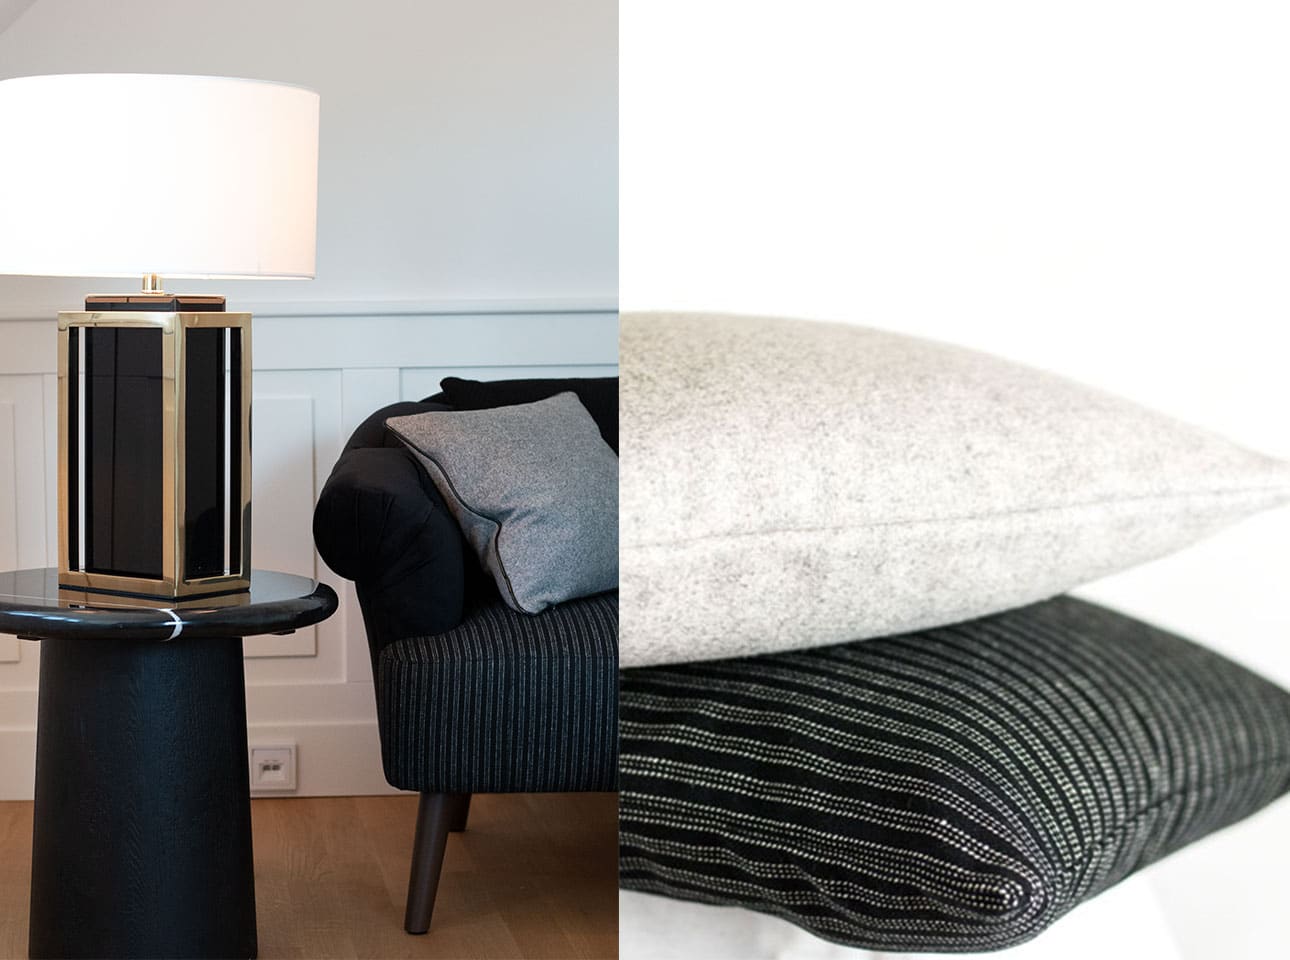 Flur gestalten mit Kissen Decken Leuchten Kerzen Duftkerzen Interior Design Inspiration Blog dunker Beistelltisch